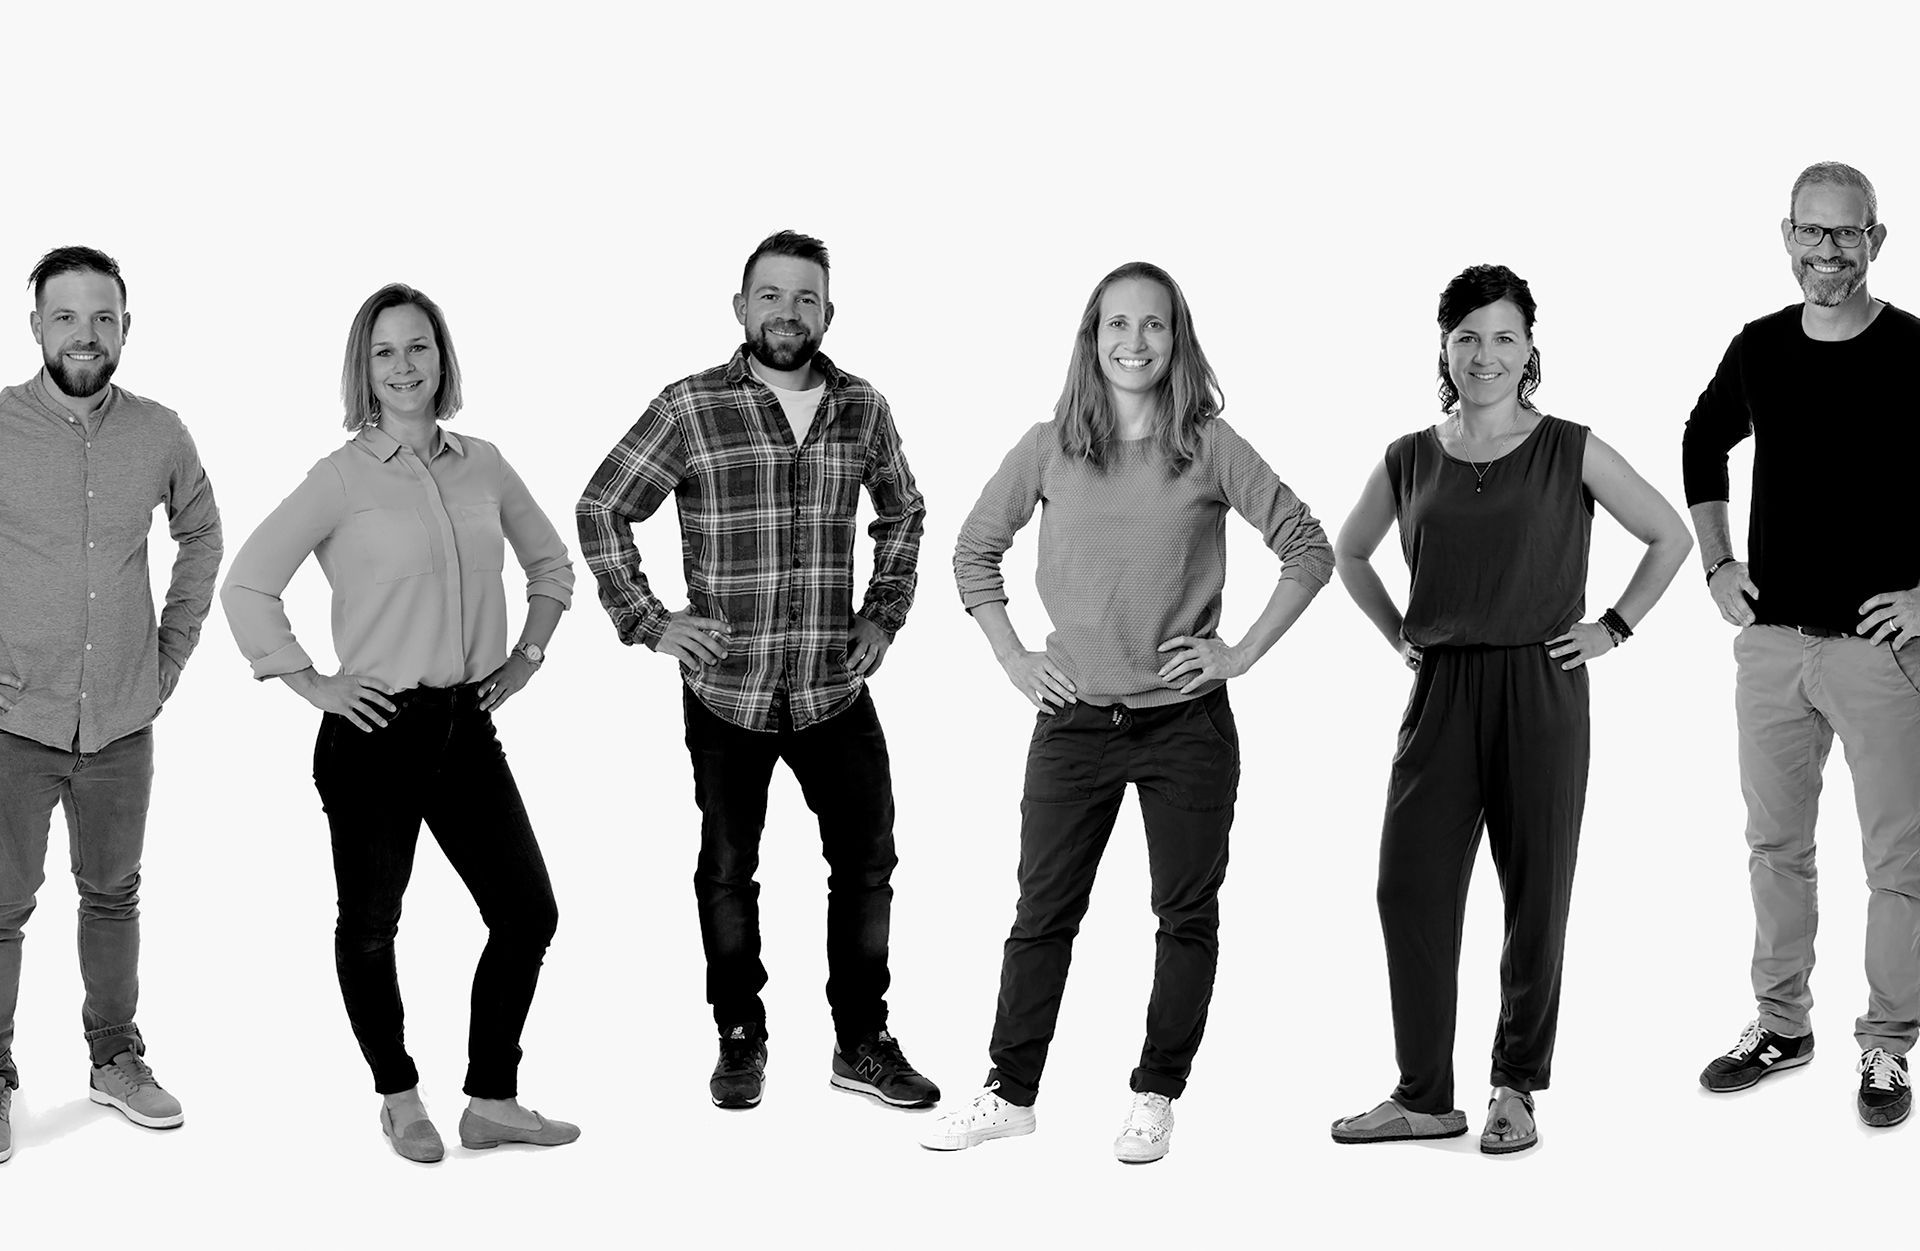 Das Team der neu gegründeten viamalastorys.ch AG (v.l.n.r.): Johannes Nidecker, Franziska Ringli, Matthias Nidecker, Flurina Marugg, Annina Gerber-Nidecker, Martin Gerber